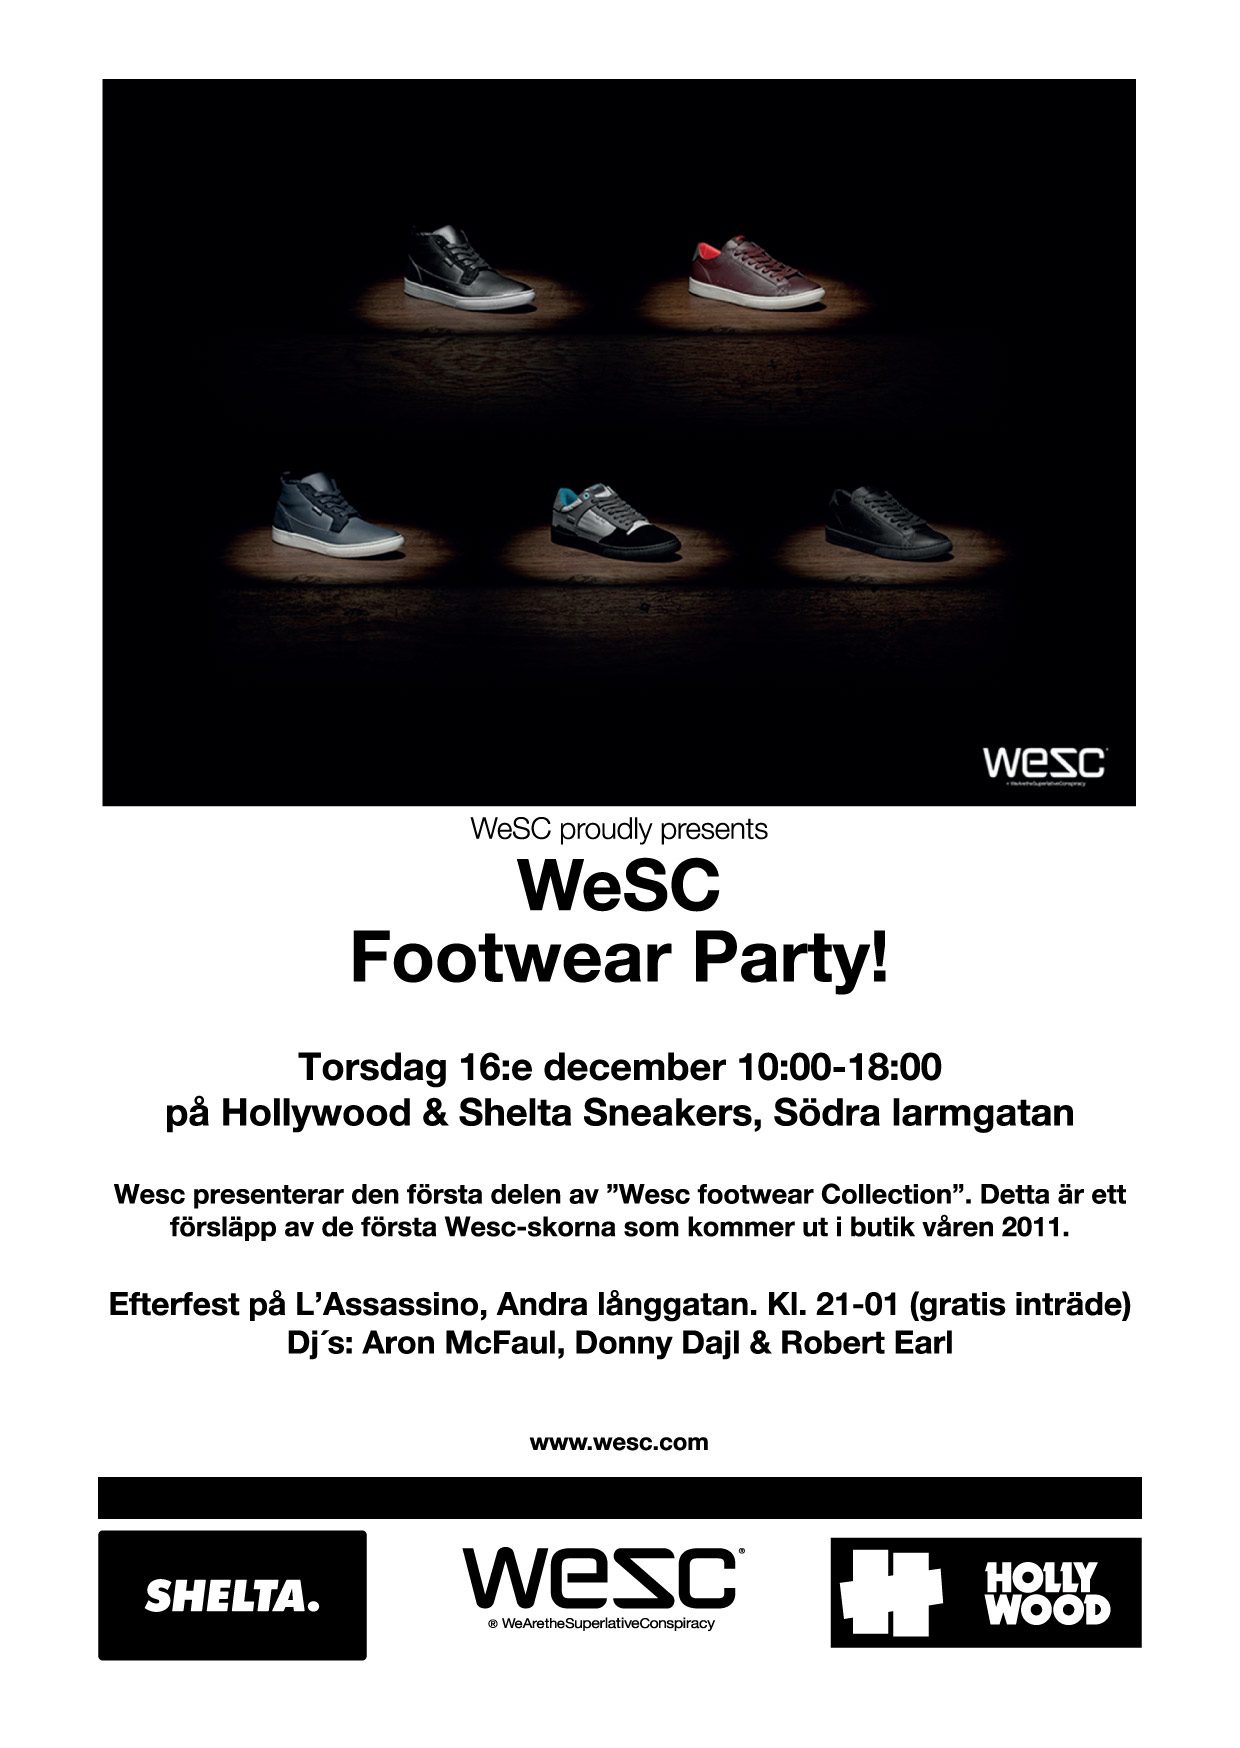 wescfootwear_gbg-web-big.jpeg